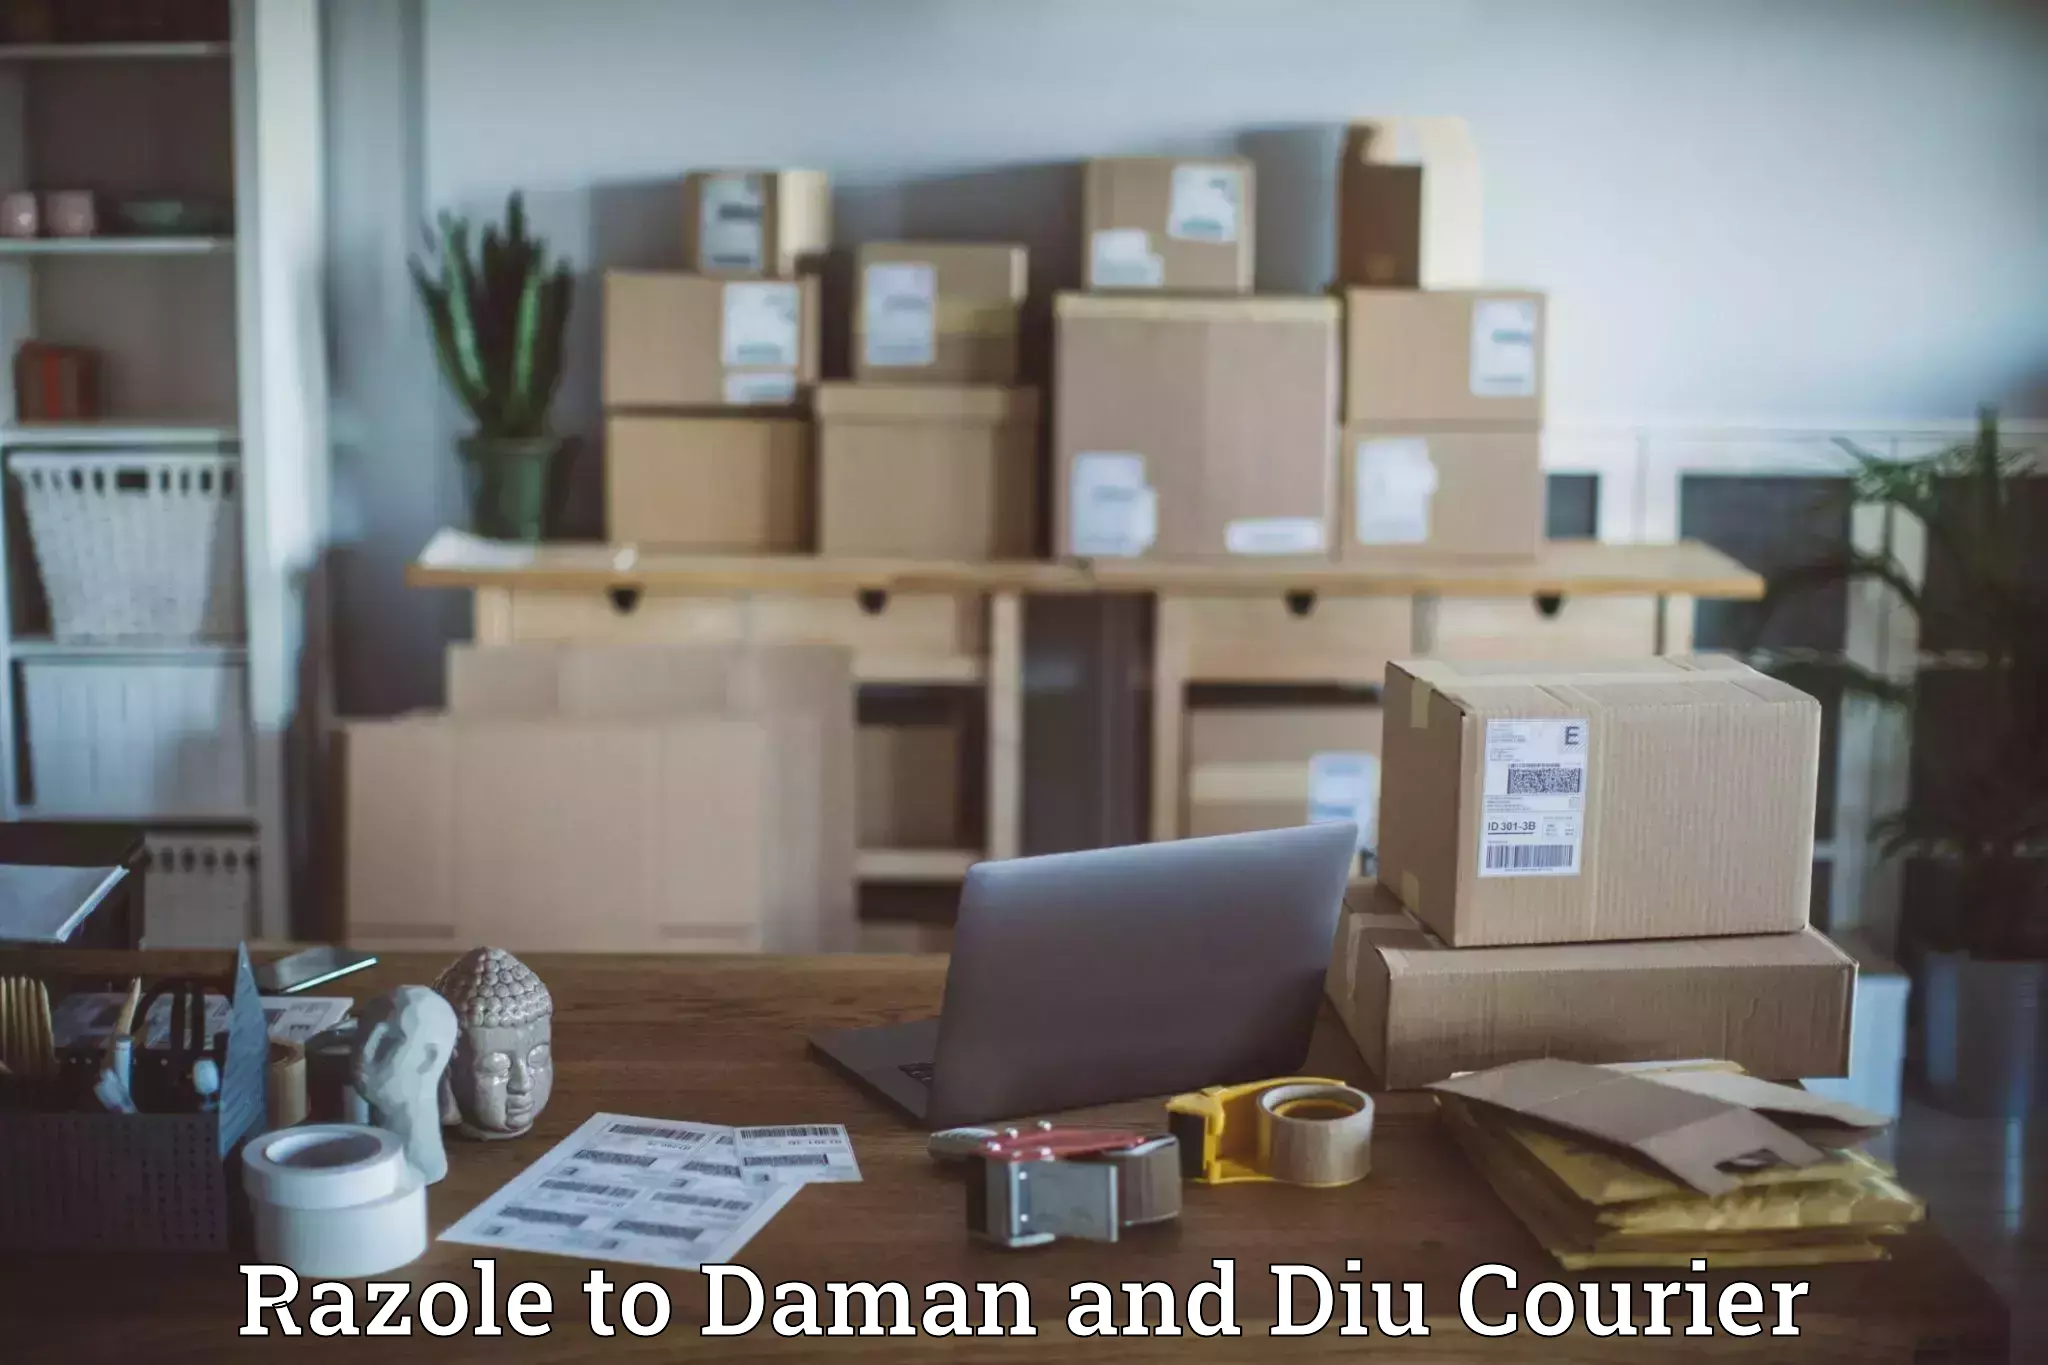 Courier service comparison Razole to Daman and Diu